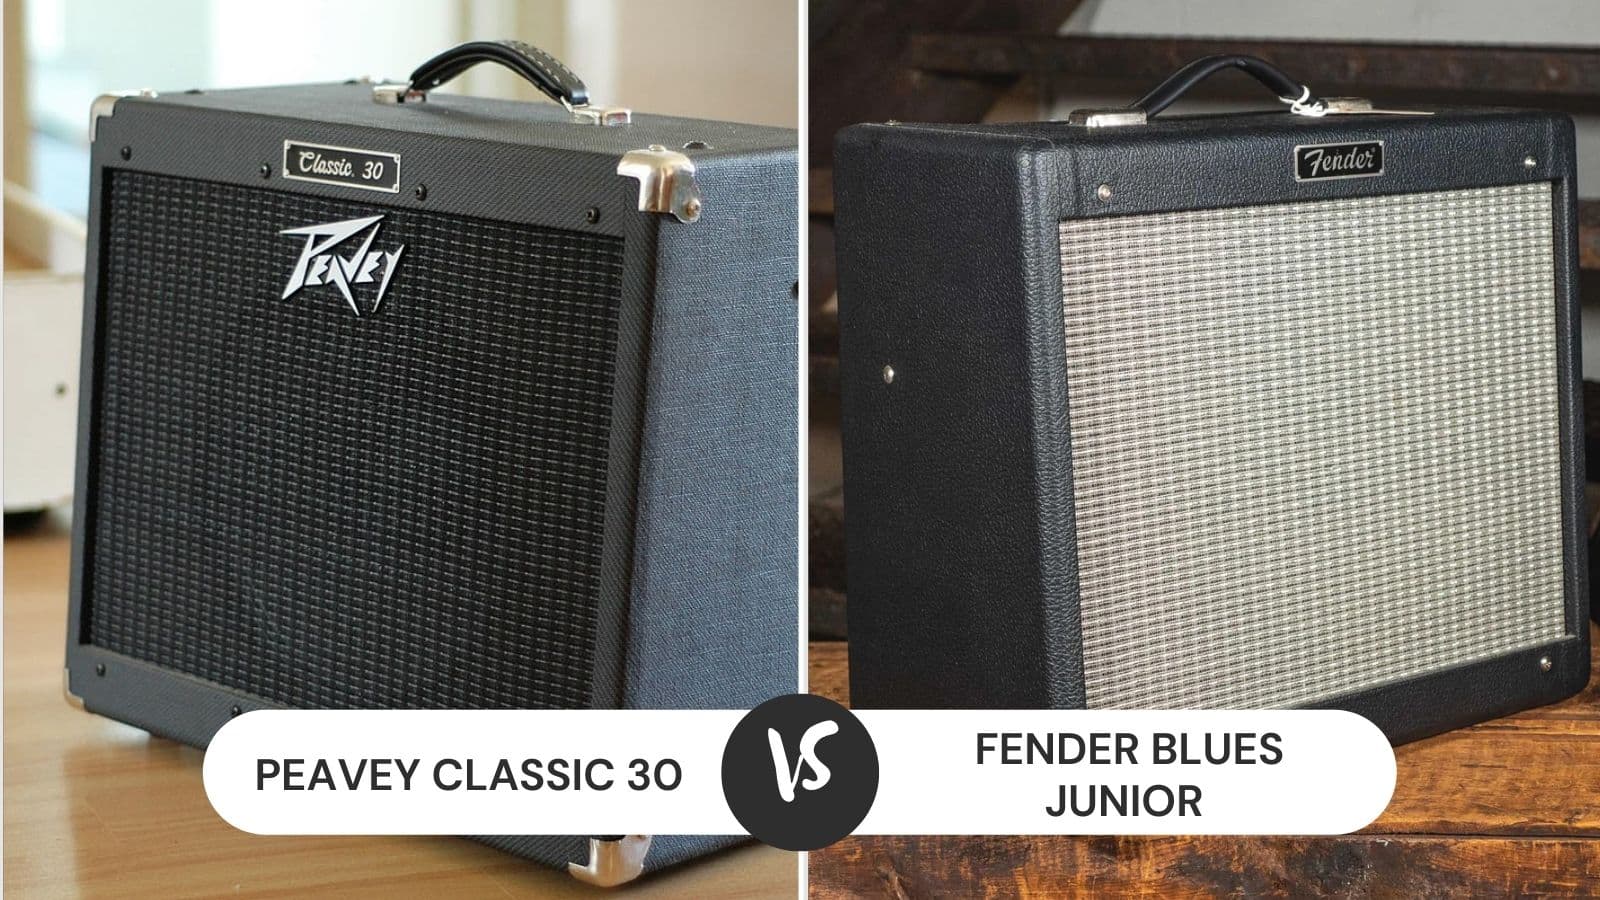 Peavey Classic 30 vs Fender Blues Junior